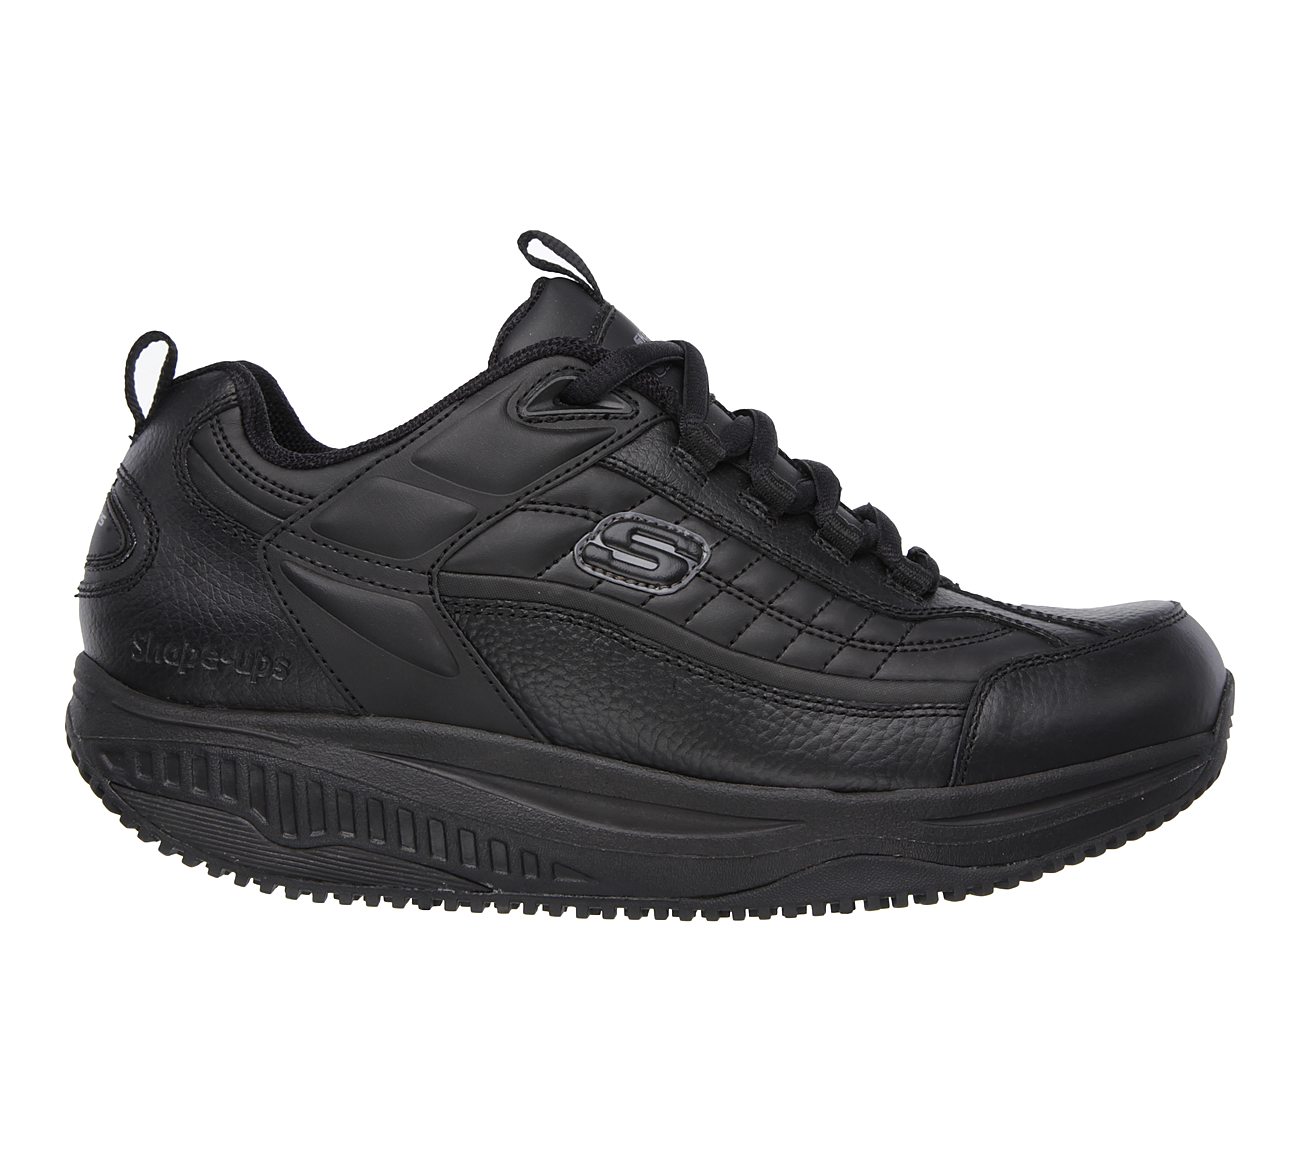 Buy SKECHERS Work: Shape-ups - Exeter SR Electrical Hazard Safe Shoes